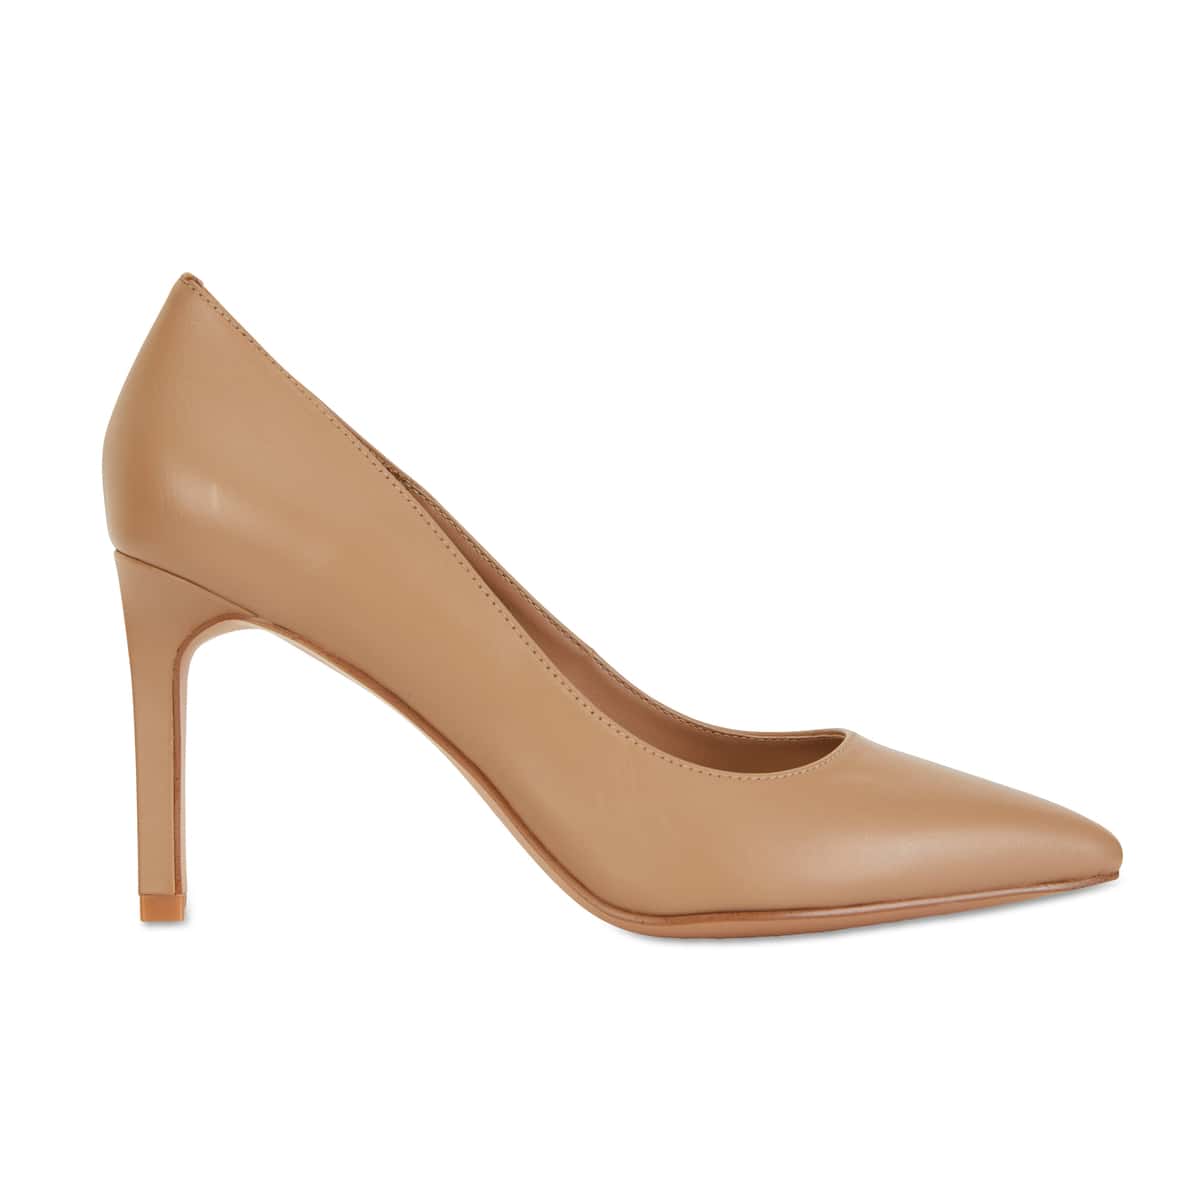 Octavia Heel in Camel Leather | Sandler | Shoe HQ